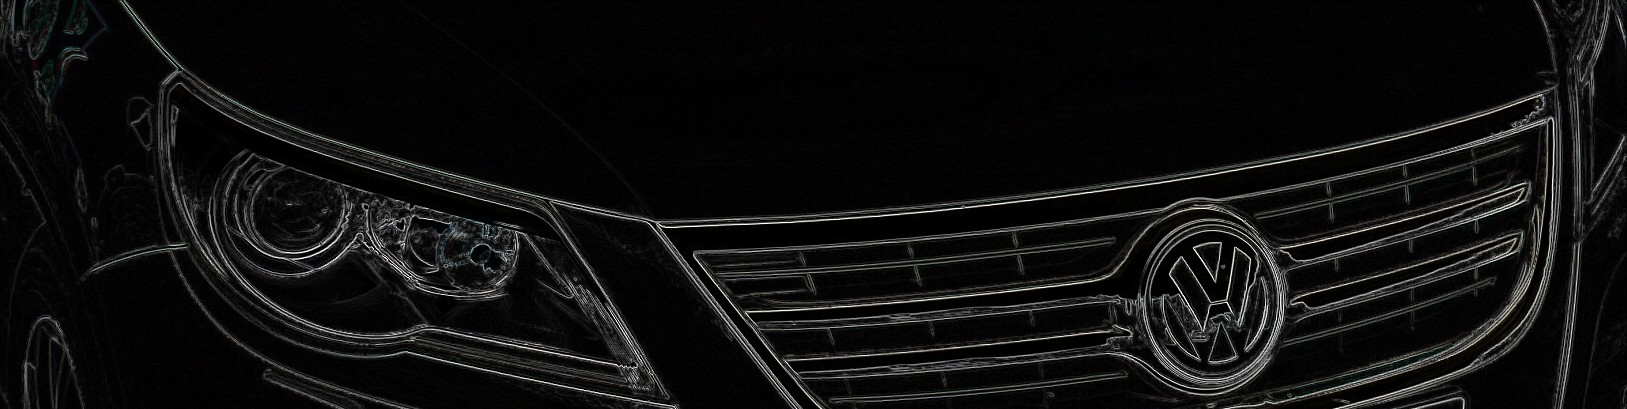 Mal wieder die Handbremse 1.2 - Komplettaustausch notwendig? - Seite 2 -  Technik - Audi A2 Club Deutschland